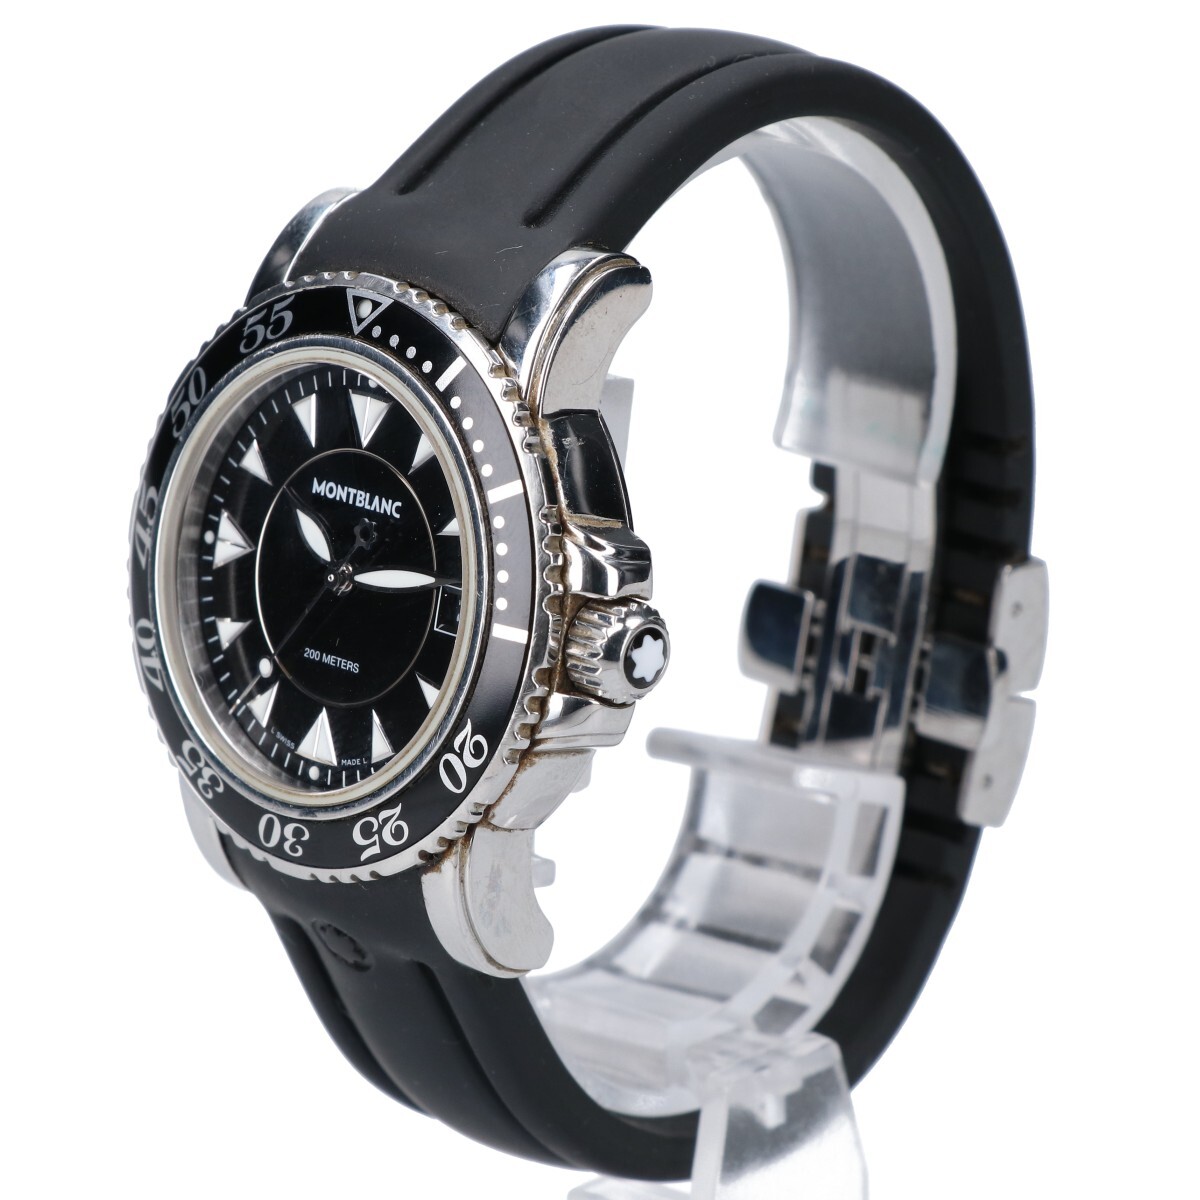 MONTBLANC Montblanc 3278 MEISTERSTUCK my? Star shute.k Date 7037 quartz rubber belt wristwatch silver / black 